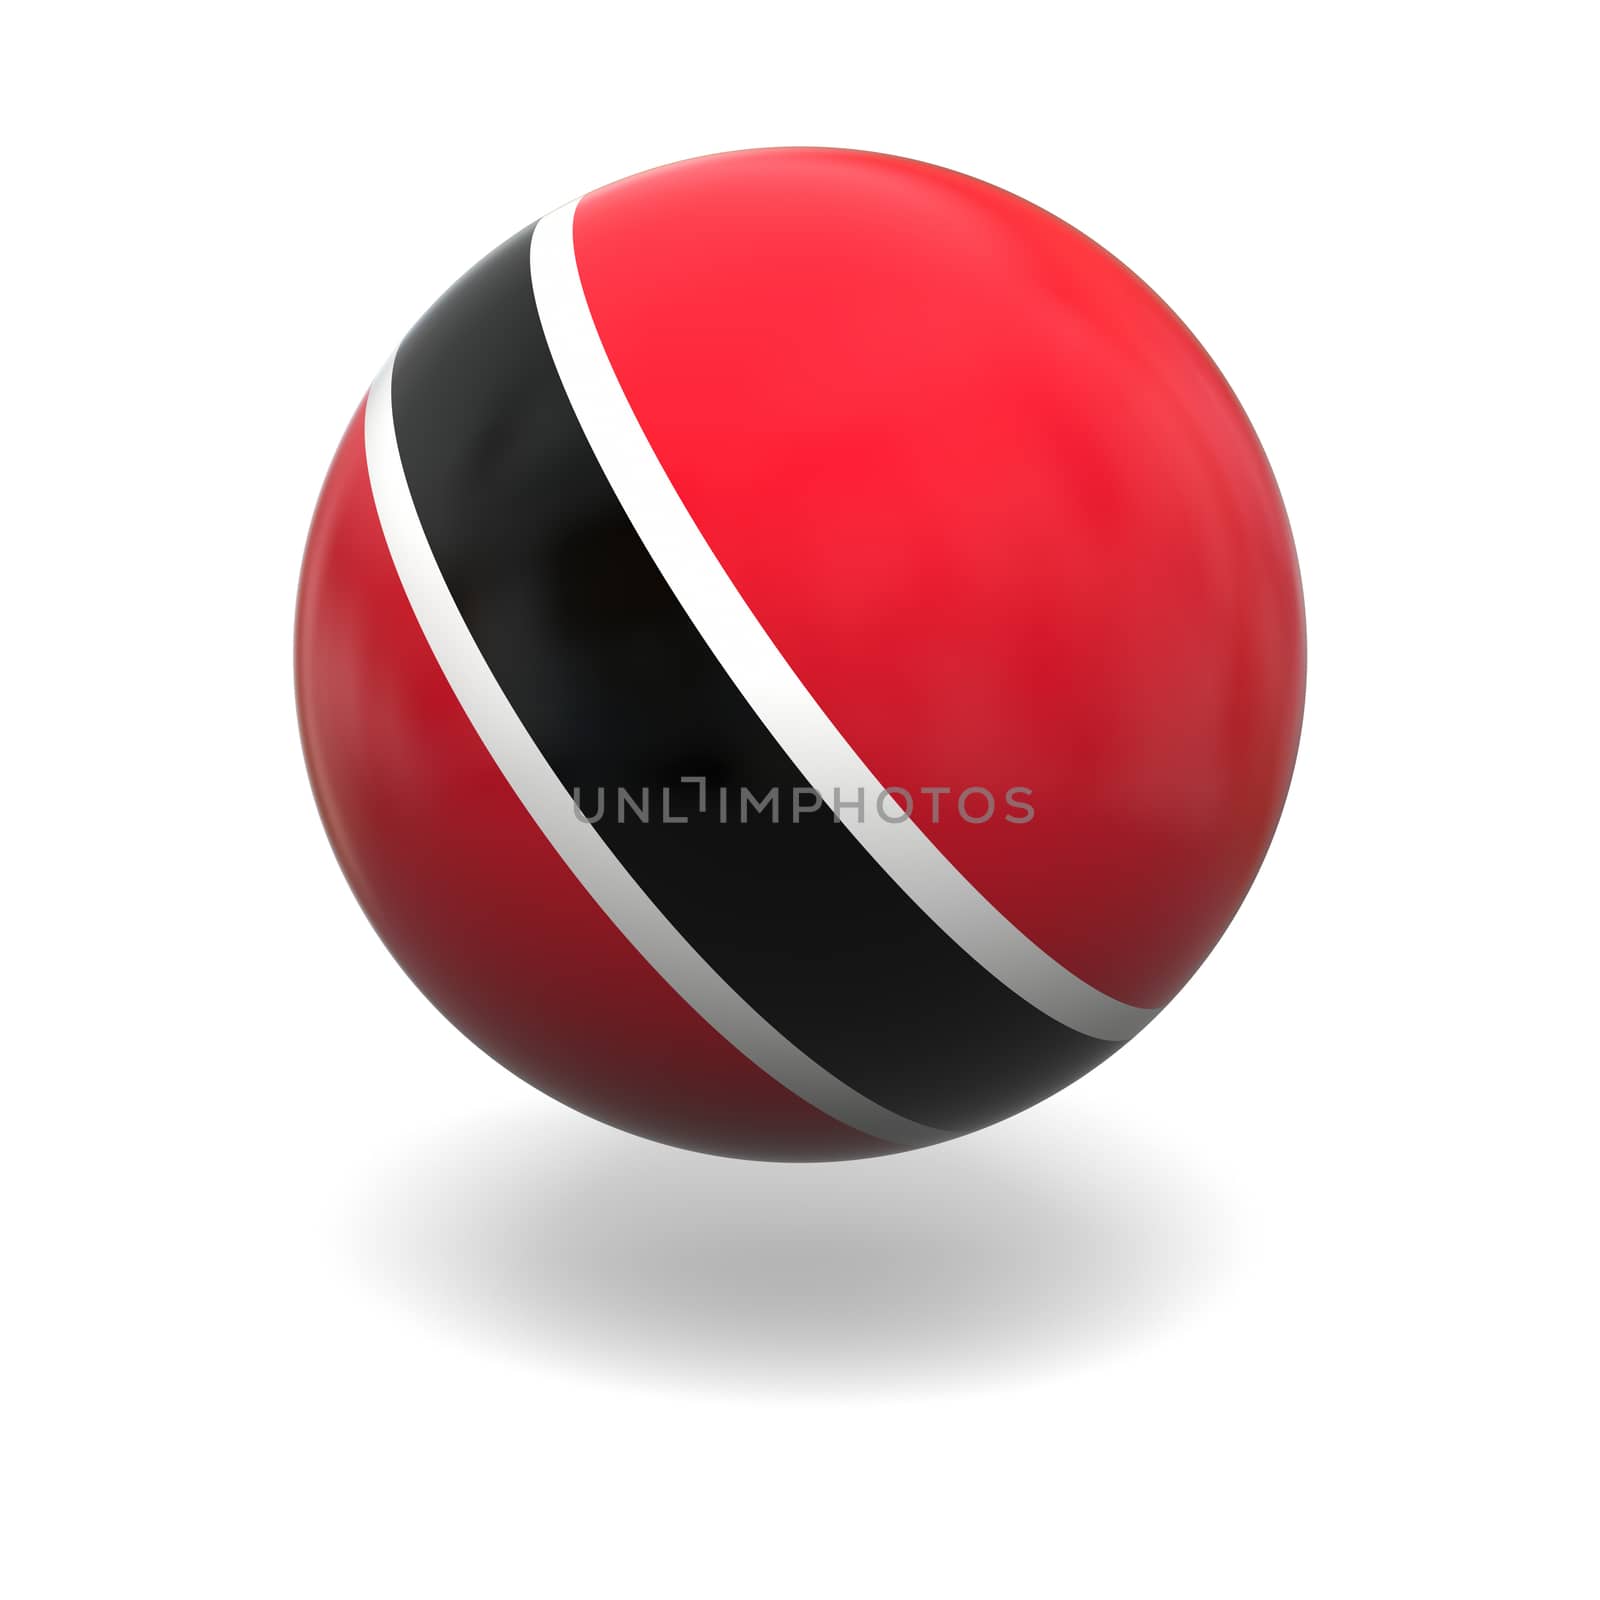 Trinidad and Tobago flag by Harvepino